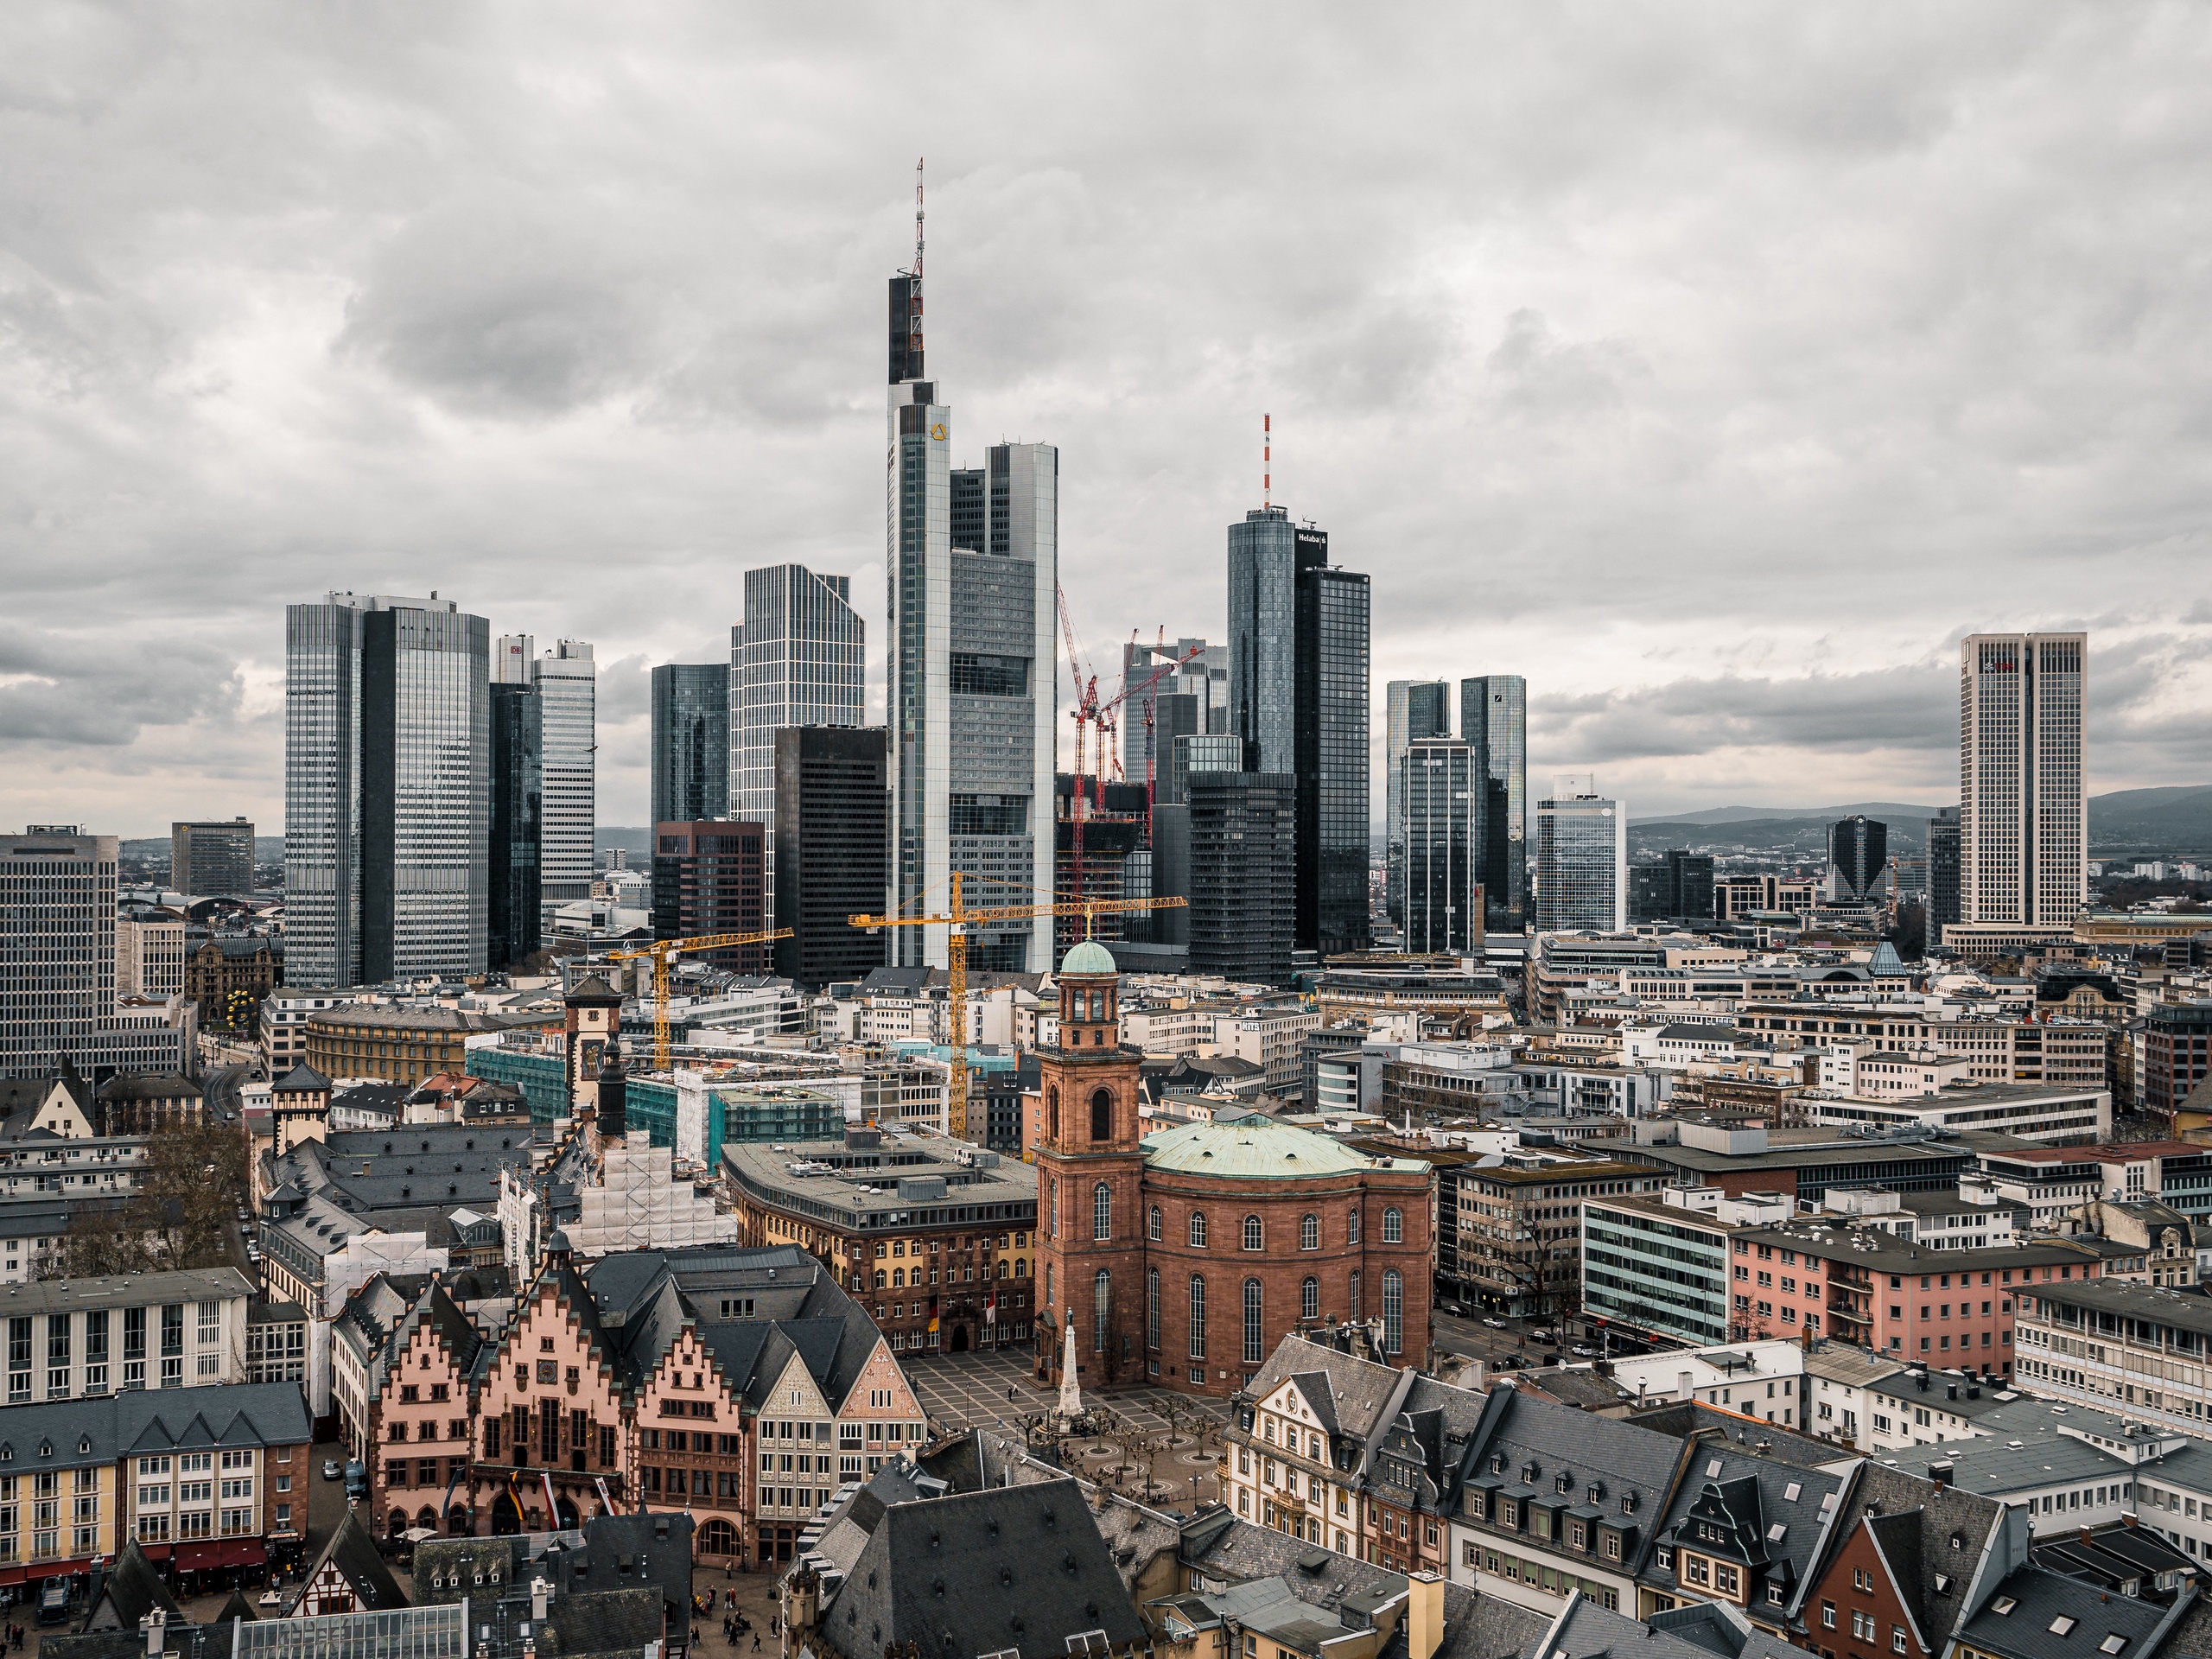 Zakendistrict van Frankfurt. De Duitse regering verwacht dat de economie van het land dit jaar nog nipt zal groeien